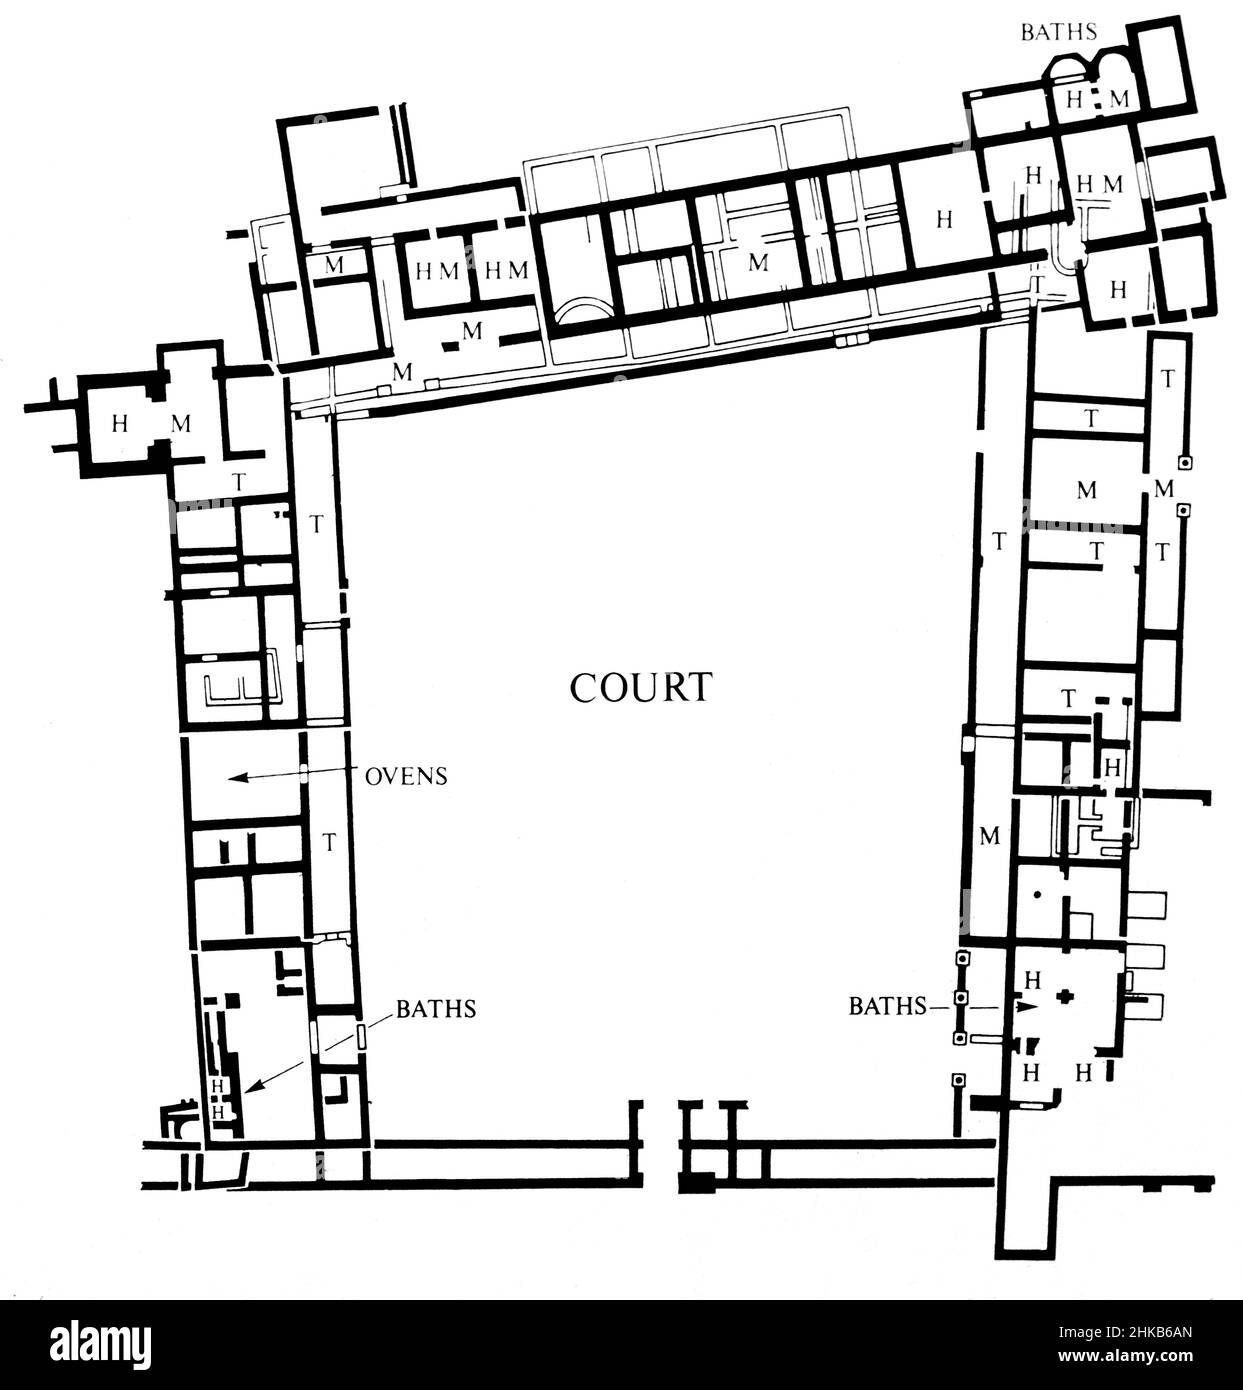 Villa Leigh Nord - ruines romaines - fouilles archéologiques.Les vestiges de la villa romaine de North Leigh se trouvent dans un paysage paisible sur les rives de l'Evenlode dans l'Oxfordshire. Cette « villa de cour » est considérée comme l'une des plus grandes villas de Grande-Bretagne romaine.Il était à son plus grand au début du 4th siècle, inclus: 4 salles de bains, 16 sols en mosaïque et 11 chambres avec chauffage au sol.Aujourd'hui, la disposition rectangulaire de la villa est visible avec un sol en mosaïque presque complet datant du 3rd siècle.Site du patrimoine anglais.Numérisation d'archivage à partir d'une lame.Juillet 1977 Banque D'Images